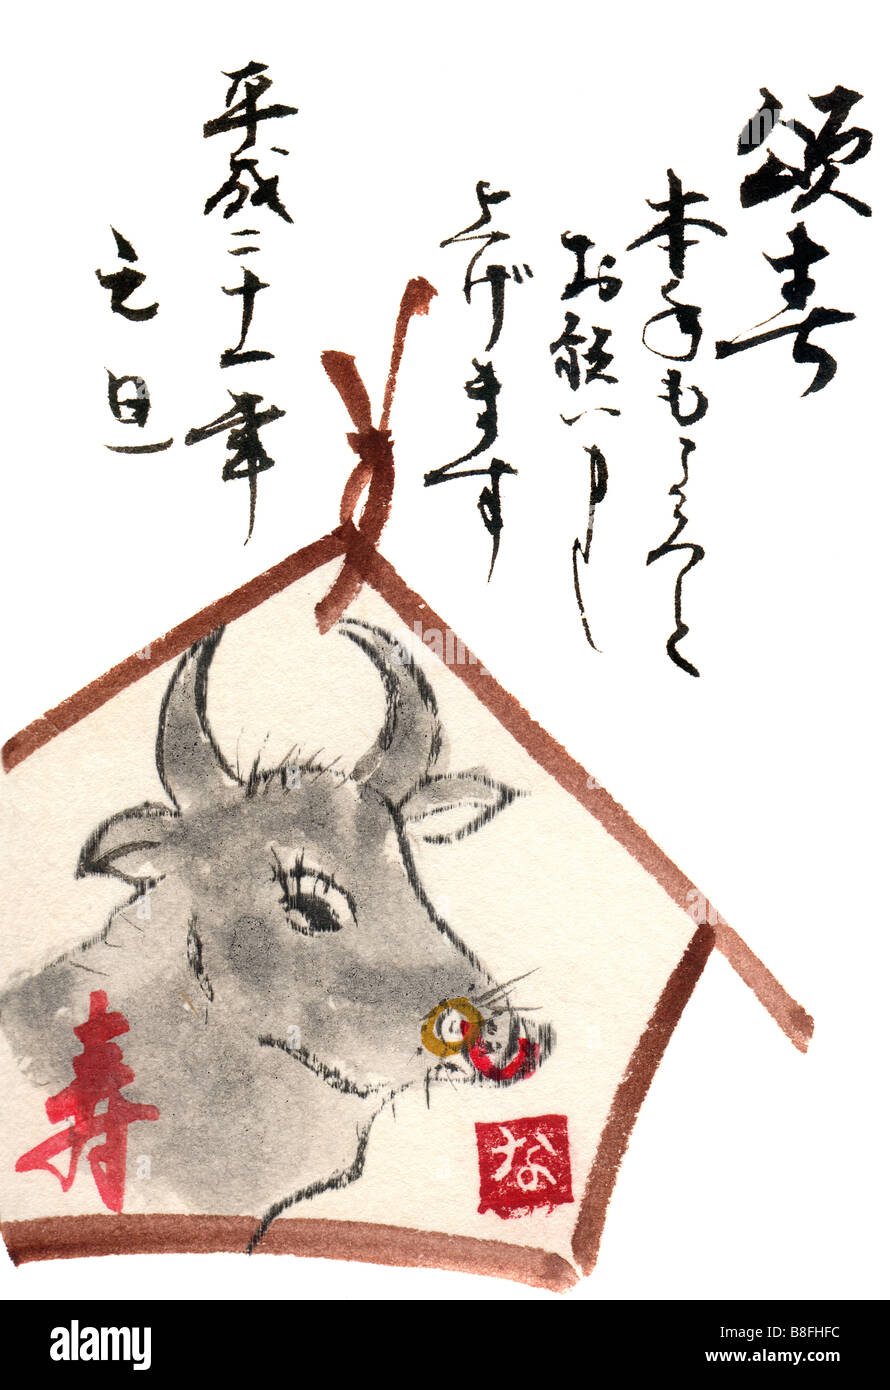 Dipinto a mano e scritto i caratteri giapponesi. La calligrafia arte da Naomi Saso di Nara, Giappone. Il cinese e il giapponese Anno del Bue Foto Stock